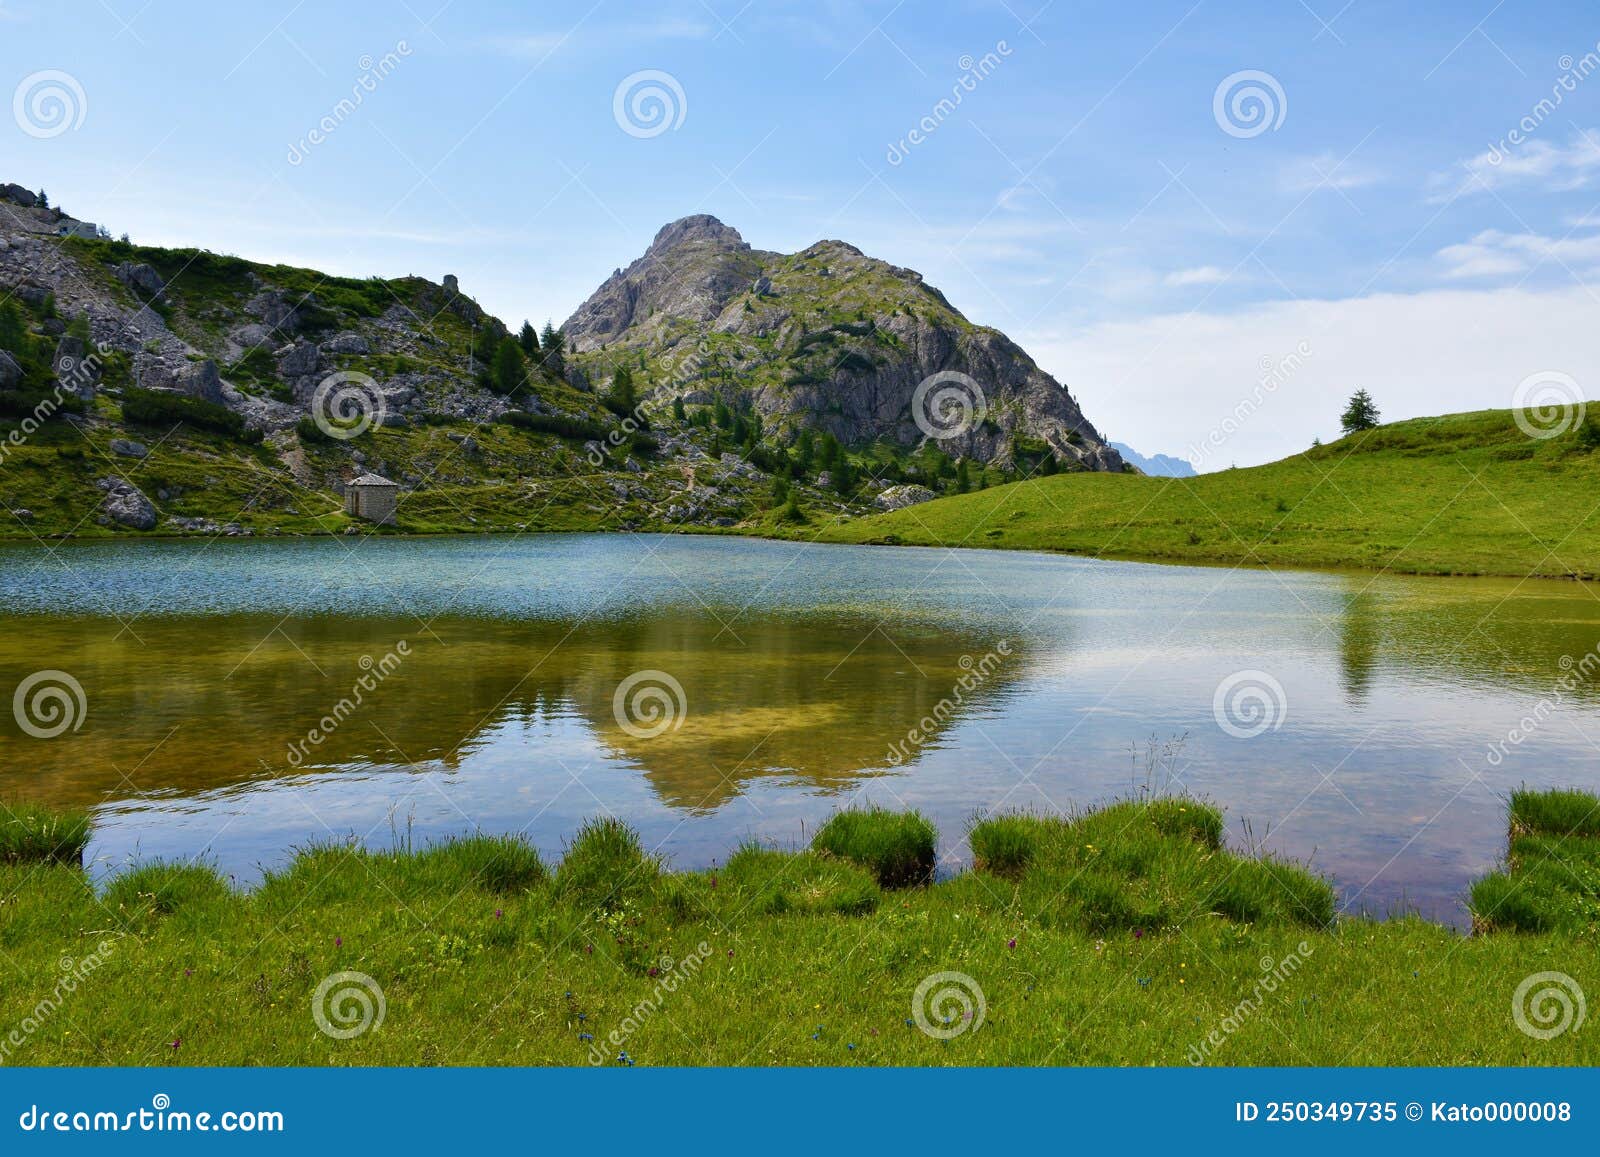 view of valparola lake and sass de stria mountain